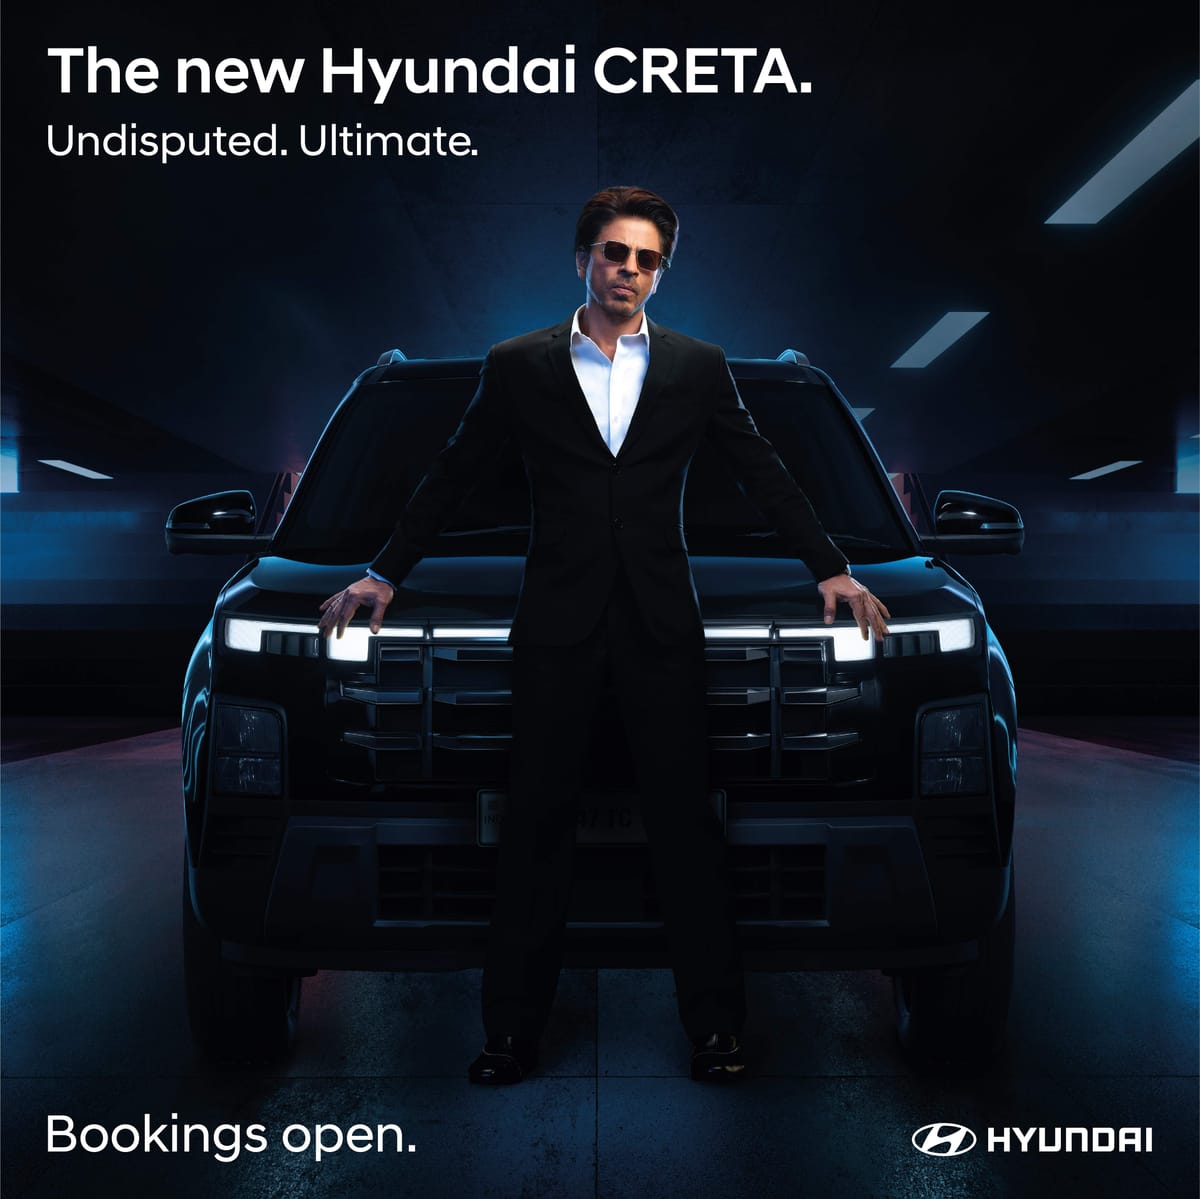 The new Hyundai CRETA - Bookings now open